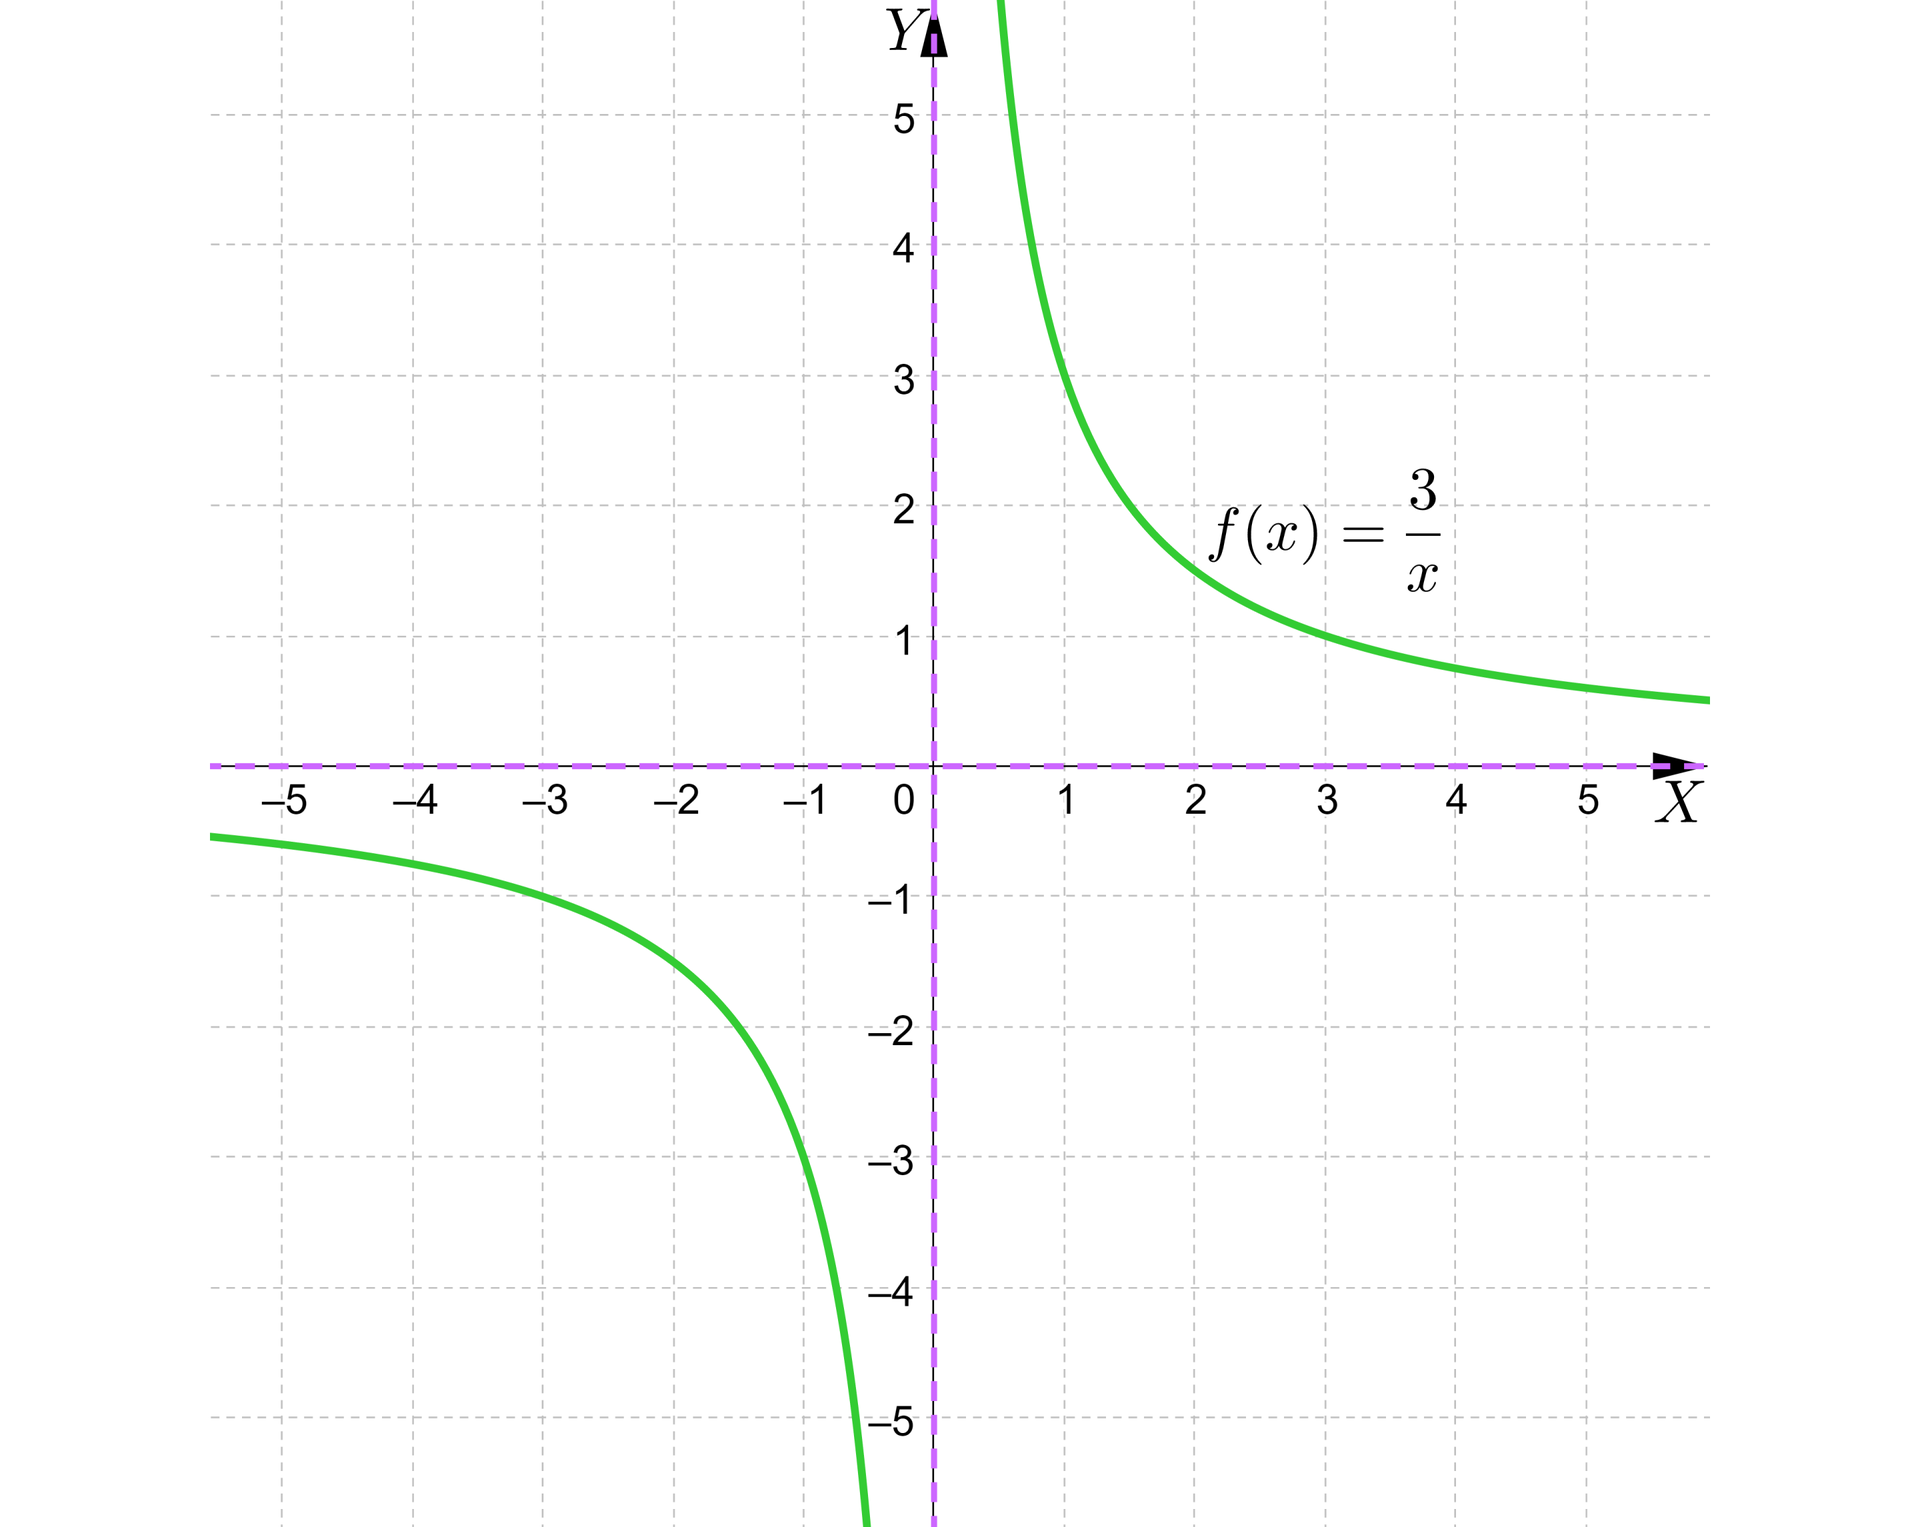 Ilustracja przedstawia poziomą oś X od minus pięciu do pięciu oraz pionową oś Y od minus pięciu do pięciu. Na rysunku zaznaczono wykres funkcji homograficznej f od x równa się trzy przez x. Wykres tej funkcji ma dwie asymptoty zawarte w poziomej osi X i pionowej osi Y. Funkcja ta jest malejąca i przechodzi przez charakterystyczne punkty nawias minus trzy średnik minus jeden koniec nawiasu, nawias minus jeden średnik  minus trzy koniec nawiasu, nawias jeden średnik trzy koniec nawiasu, nawias trzy średnik jeden koniec nawiasu. 